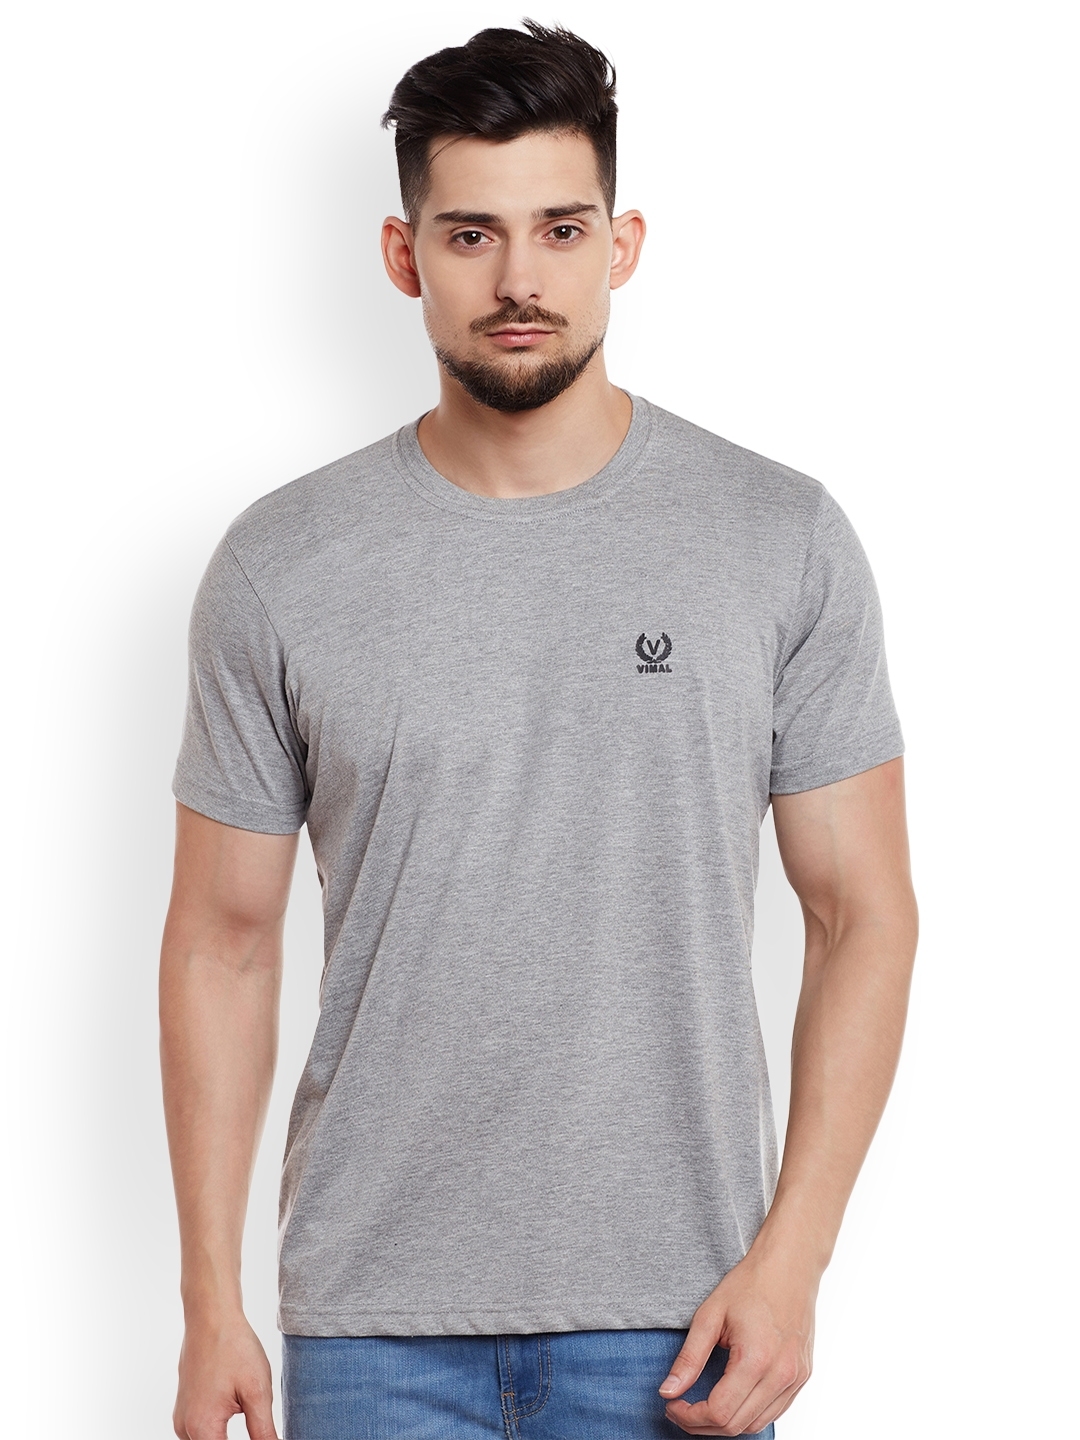 Download Buy VIMAL Men Grey Melange Solid T Shirt - Tshirts for Men ...